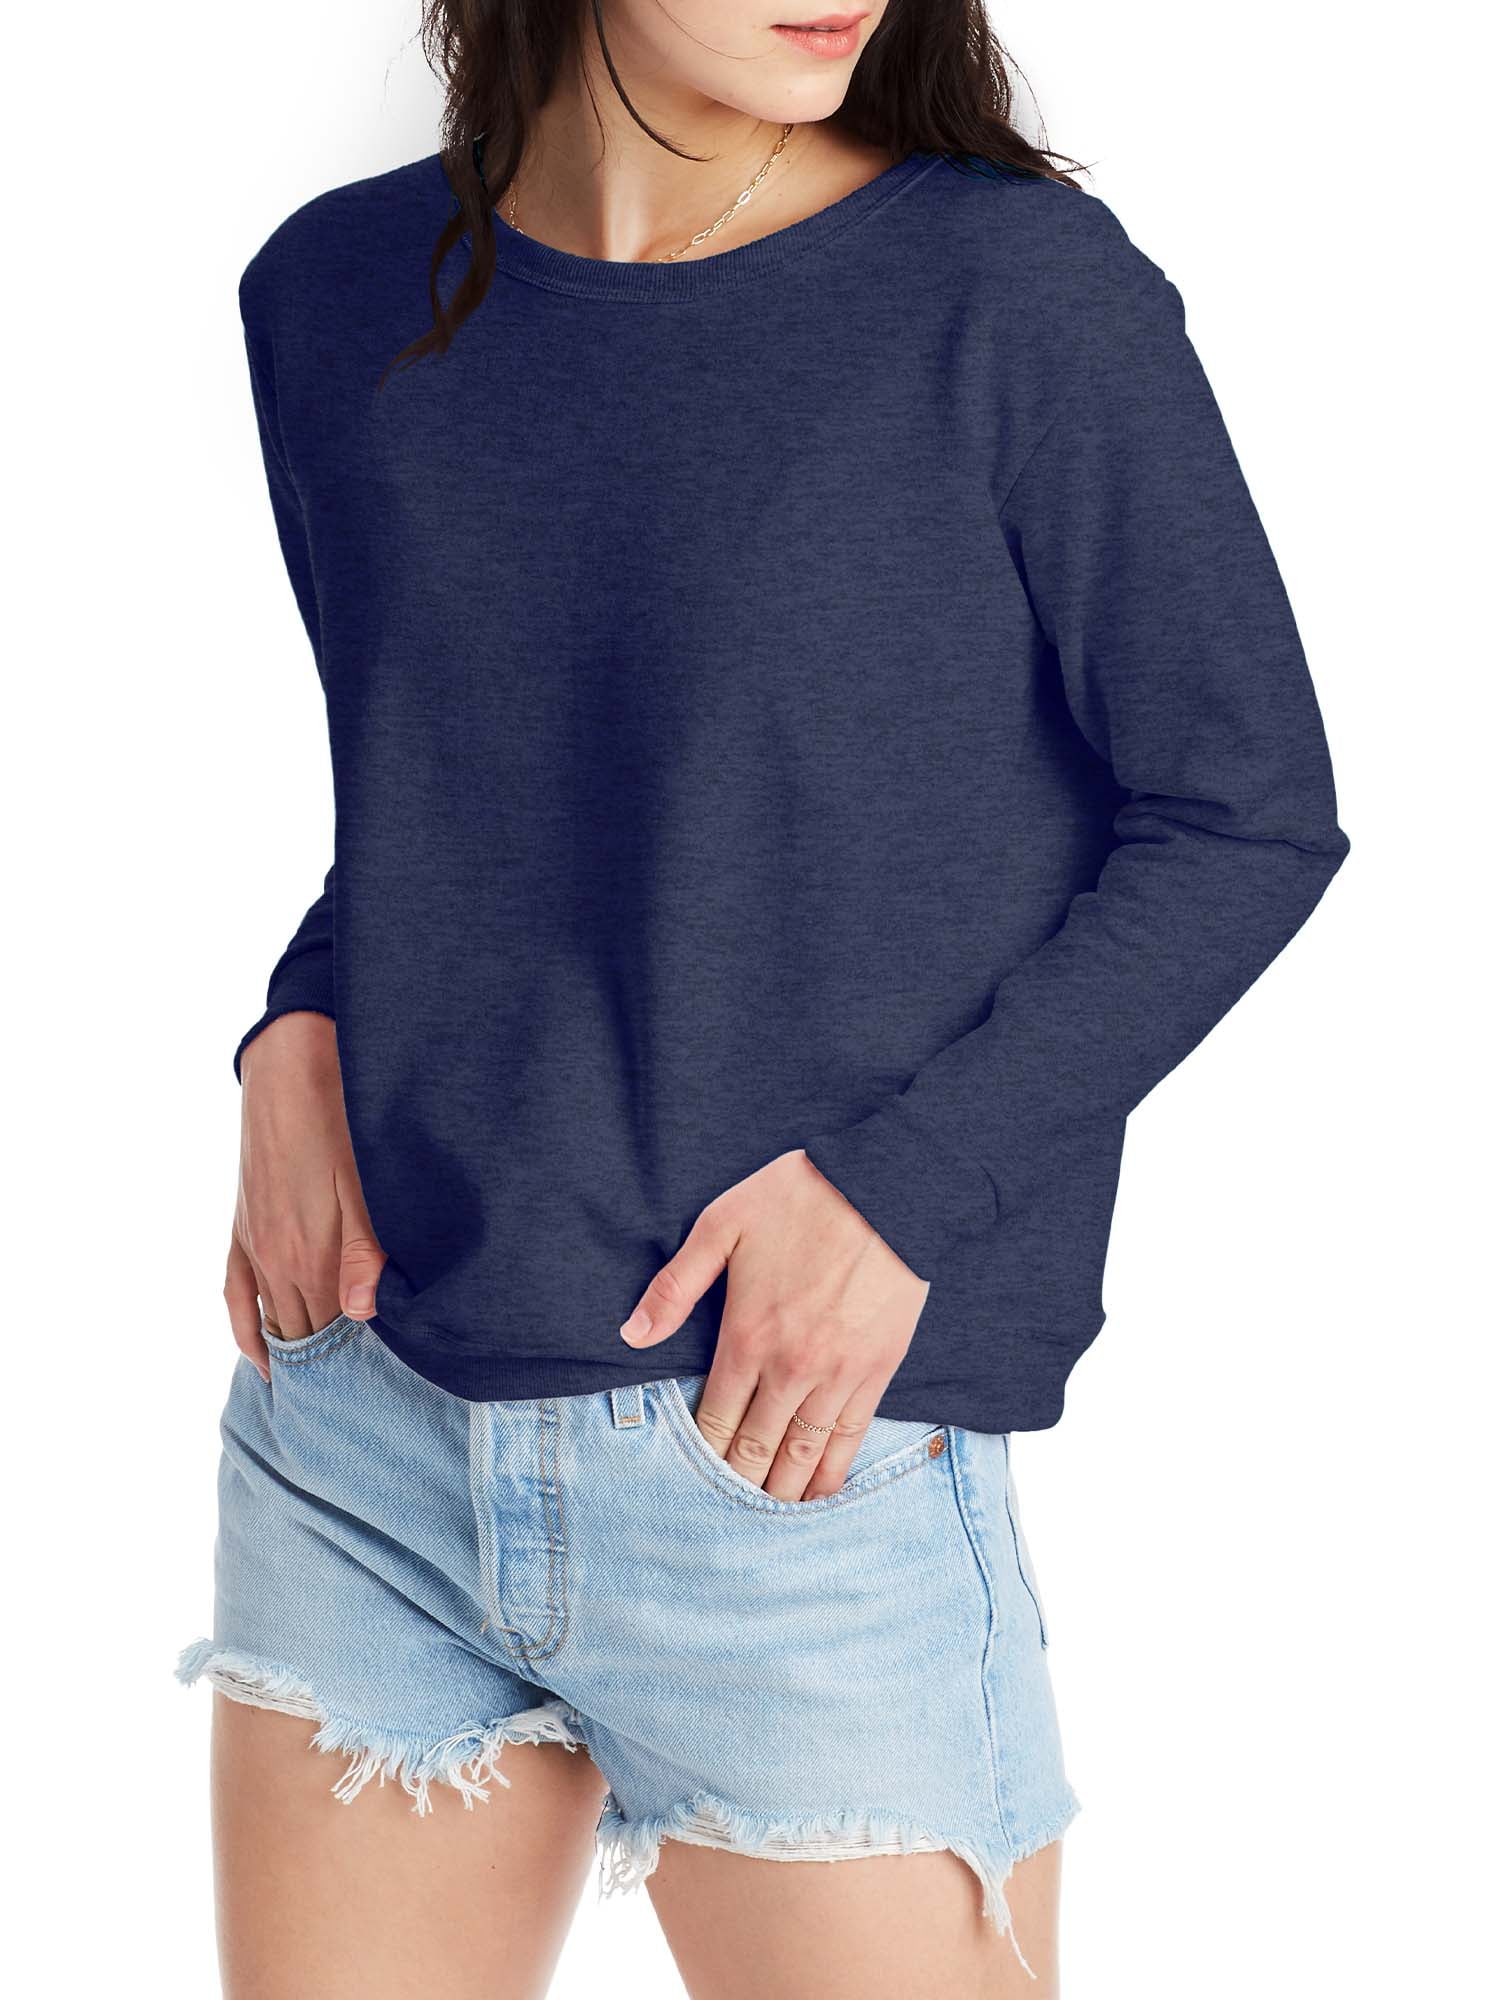 Hanes Women’s EcoSmart Cotton-Blend Fleece Crewneck Sweatshirt ...